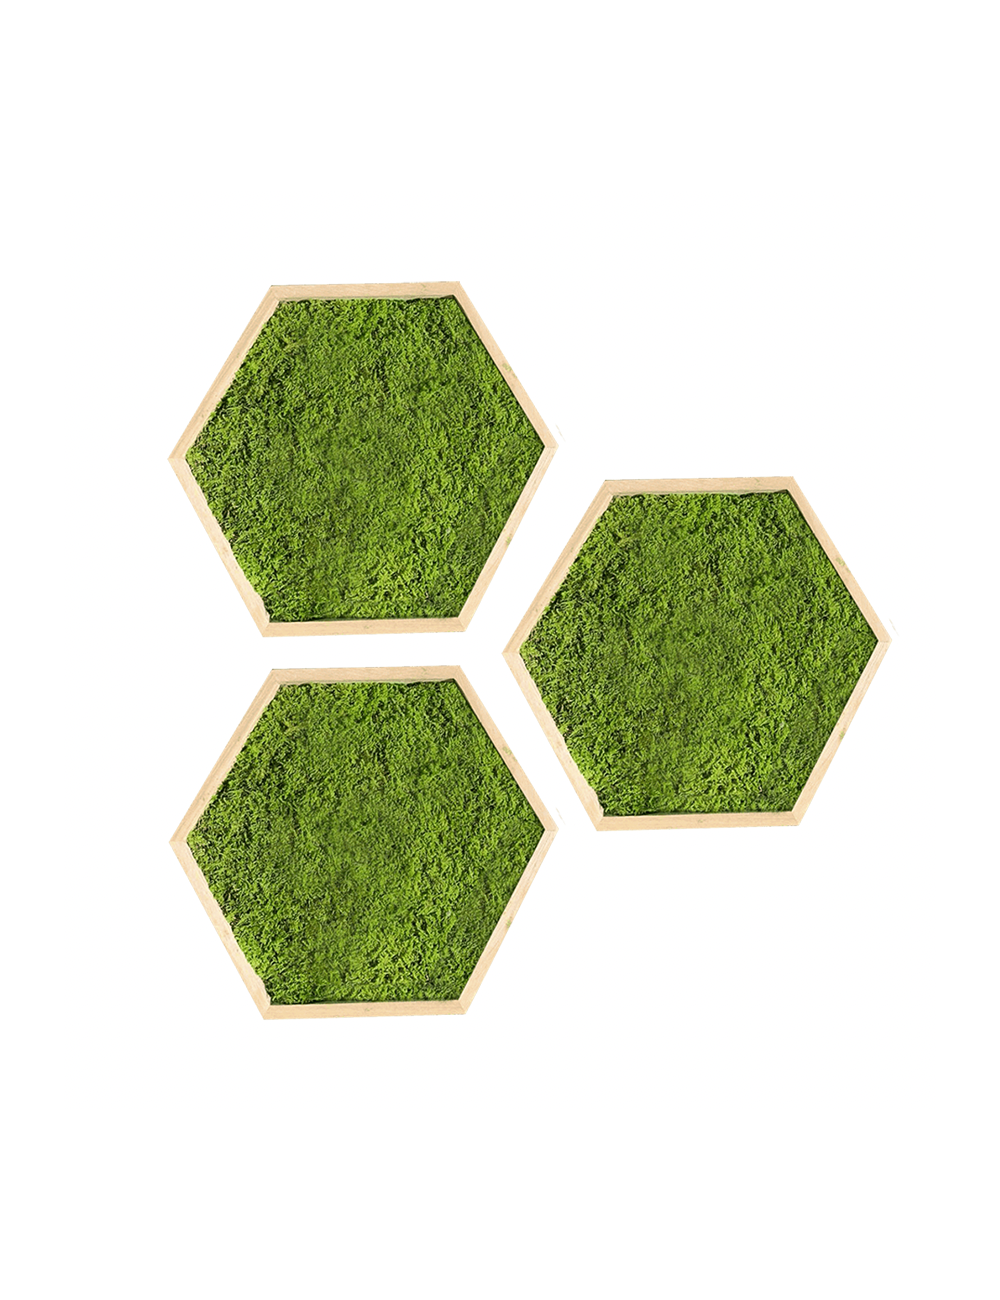 Hexagone en mousse plate verte claire